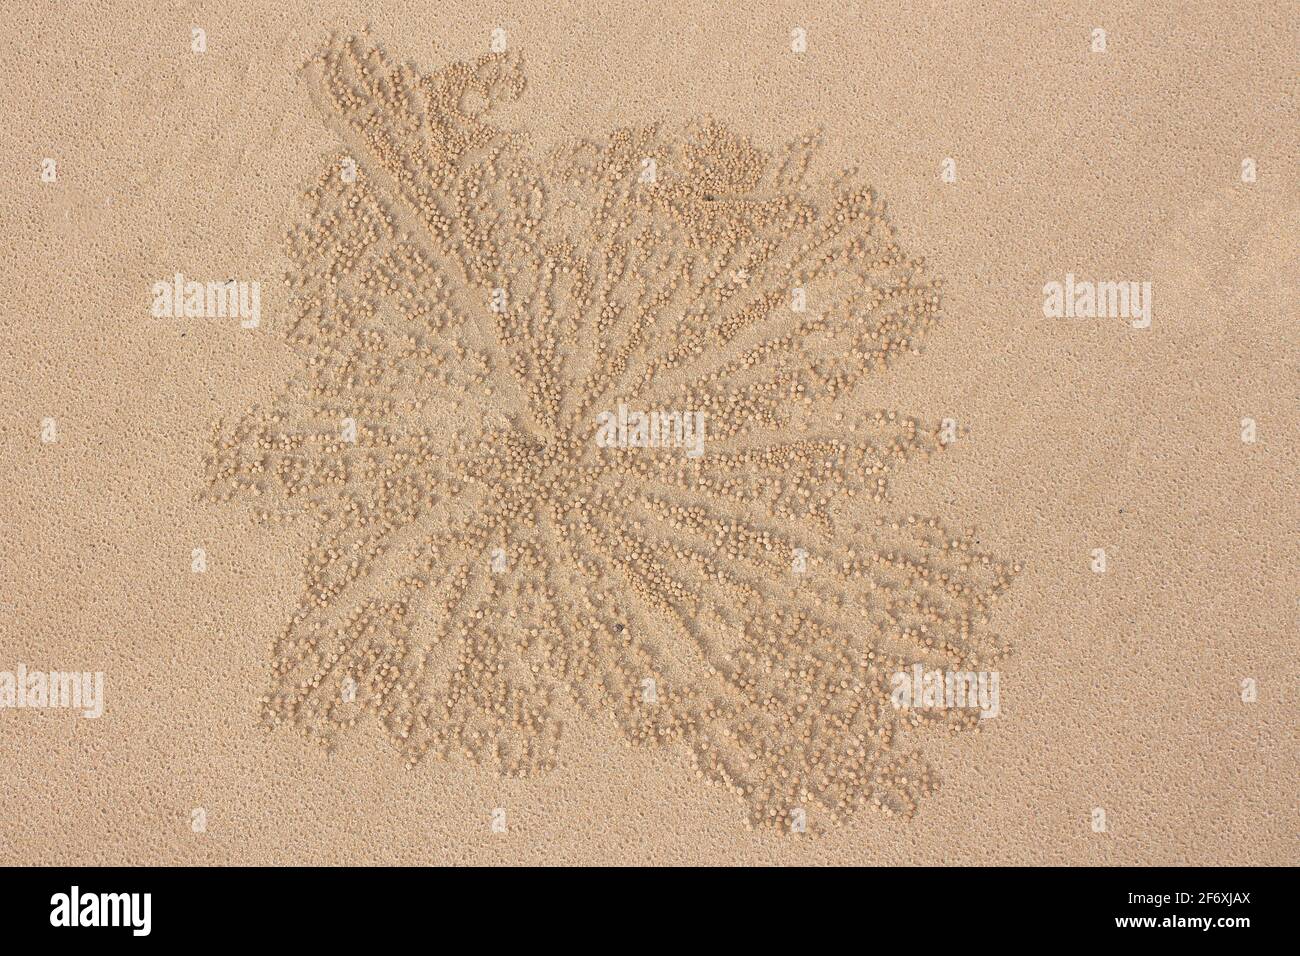 Das Detail eines Krabbenausschaufens mit symmetrischen kleinen Sandbällen am Sandstrand Stockfoto